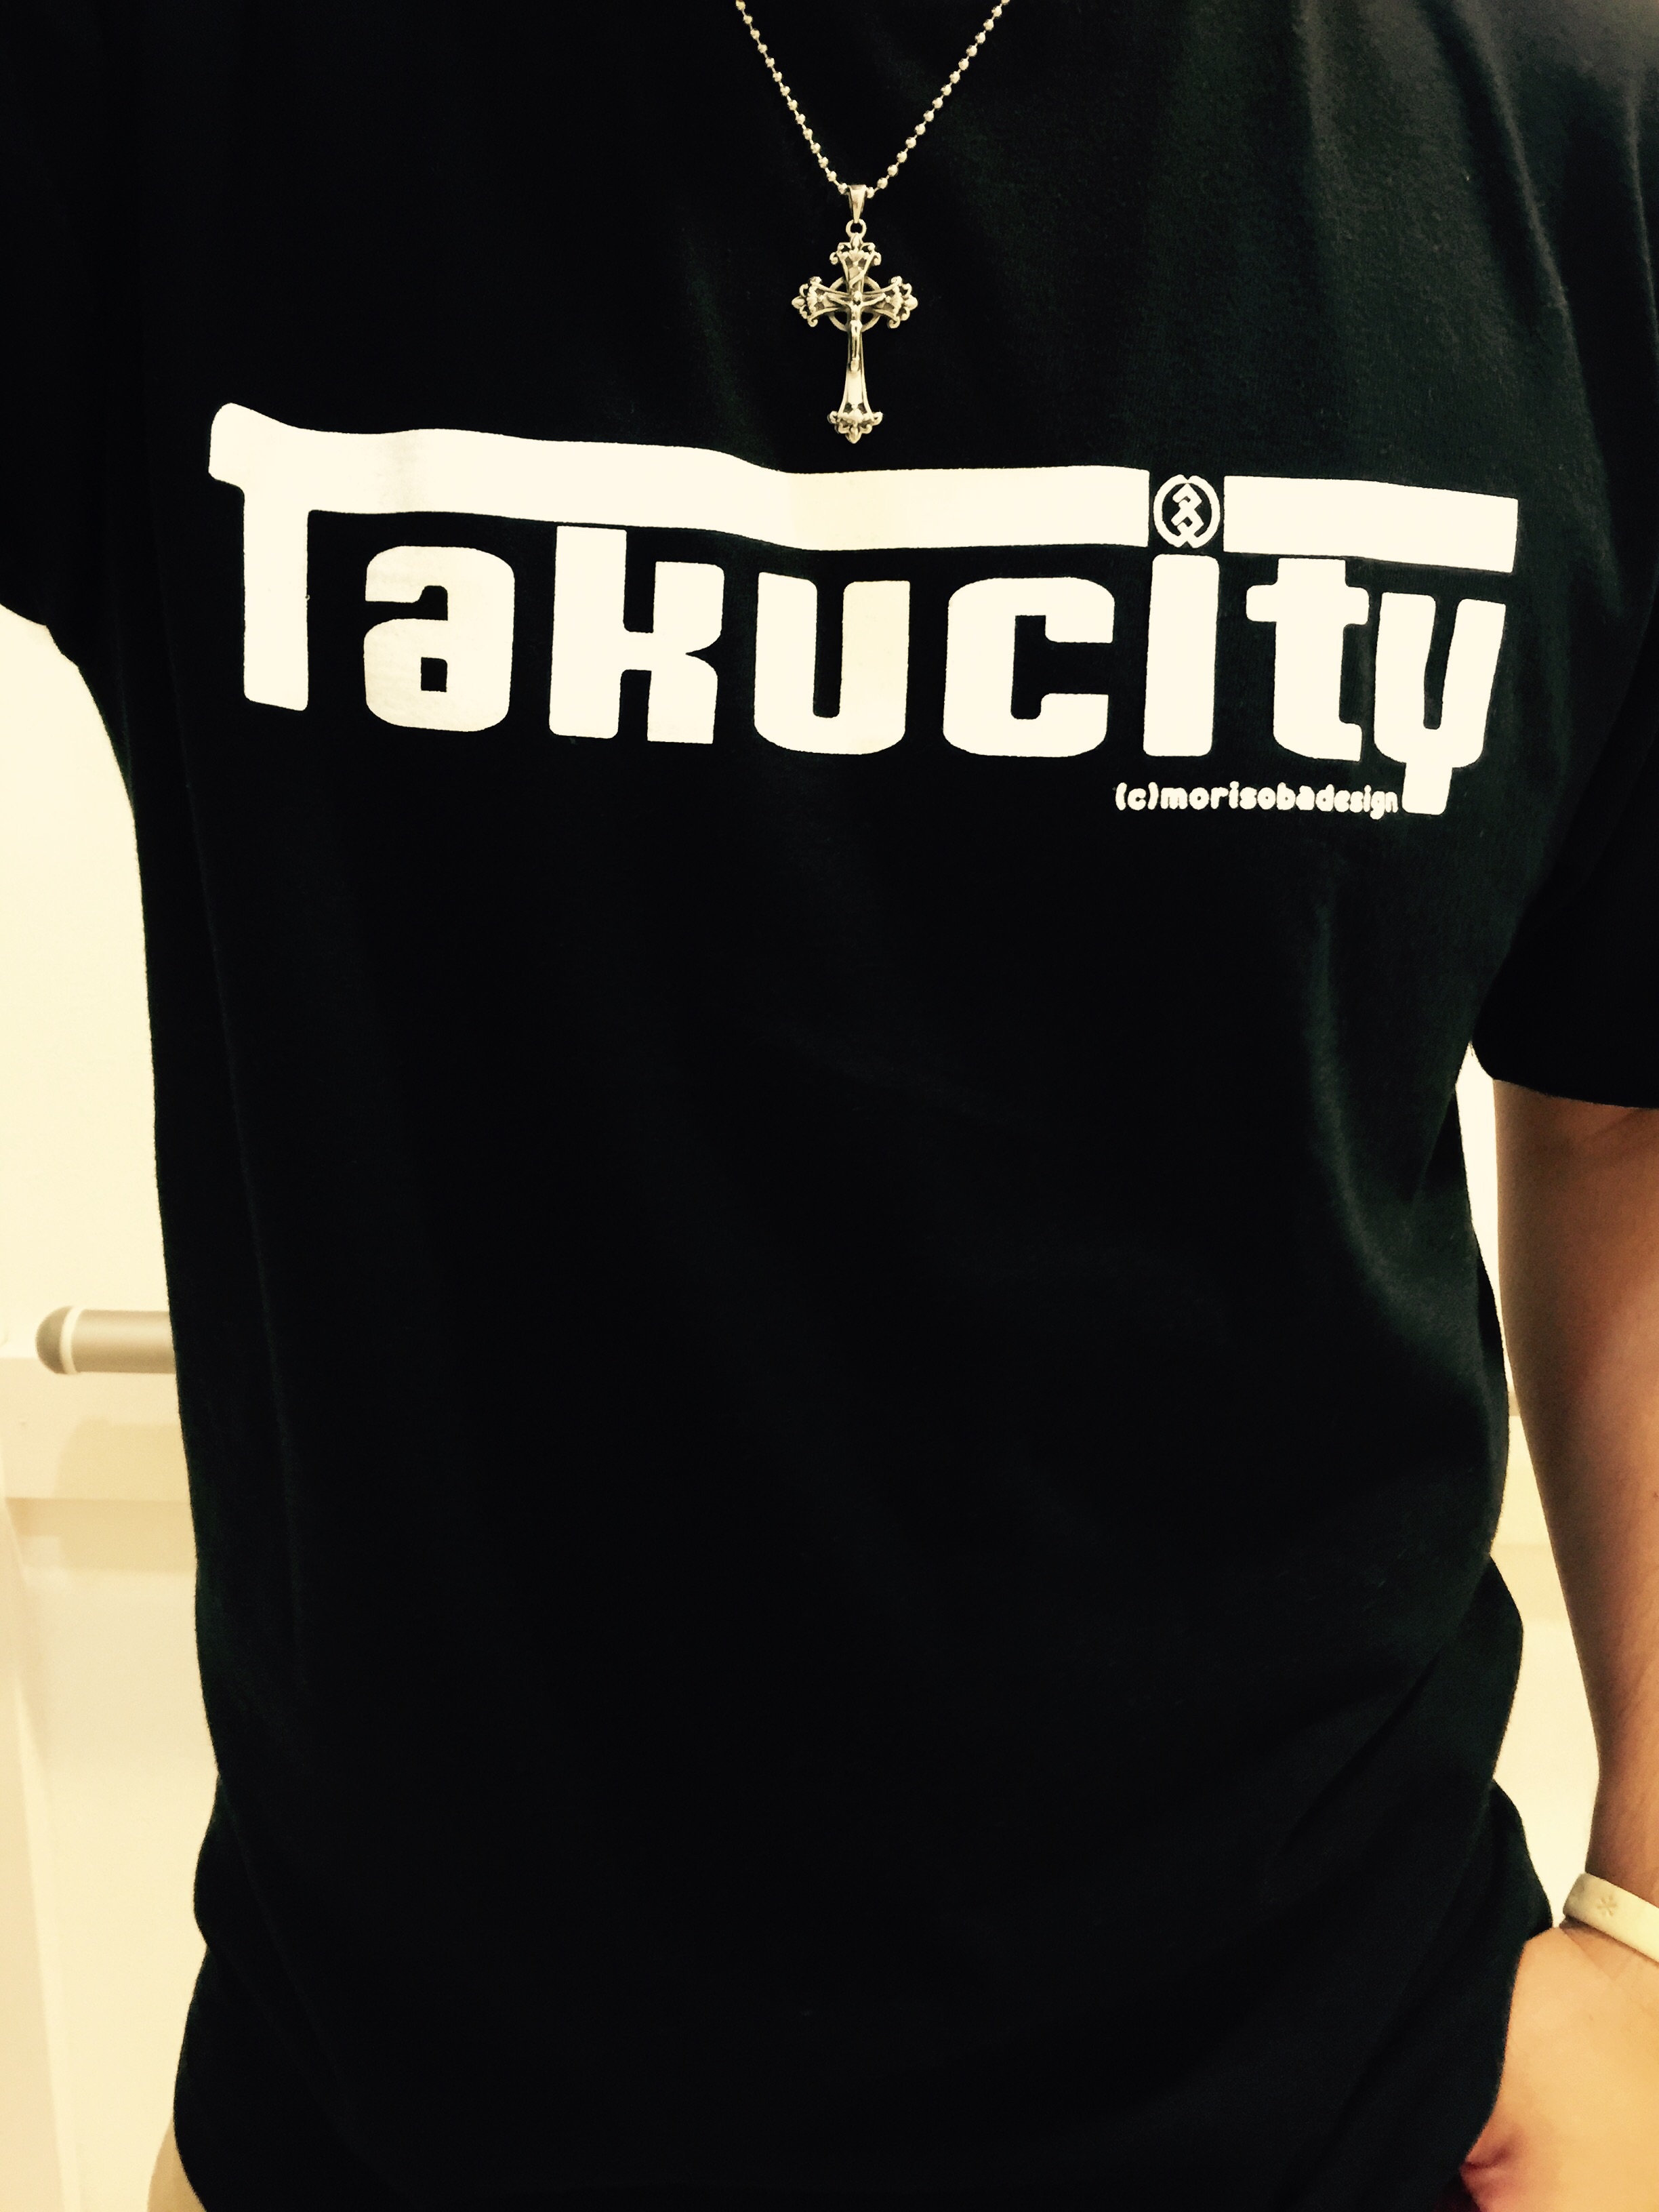 『Takucity』Tシャツ(ブラック×ホワイト)がコチラになります。